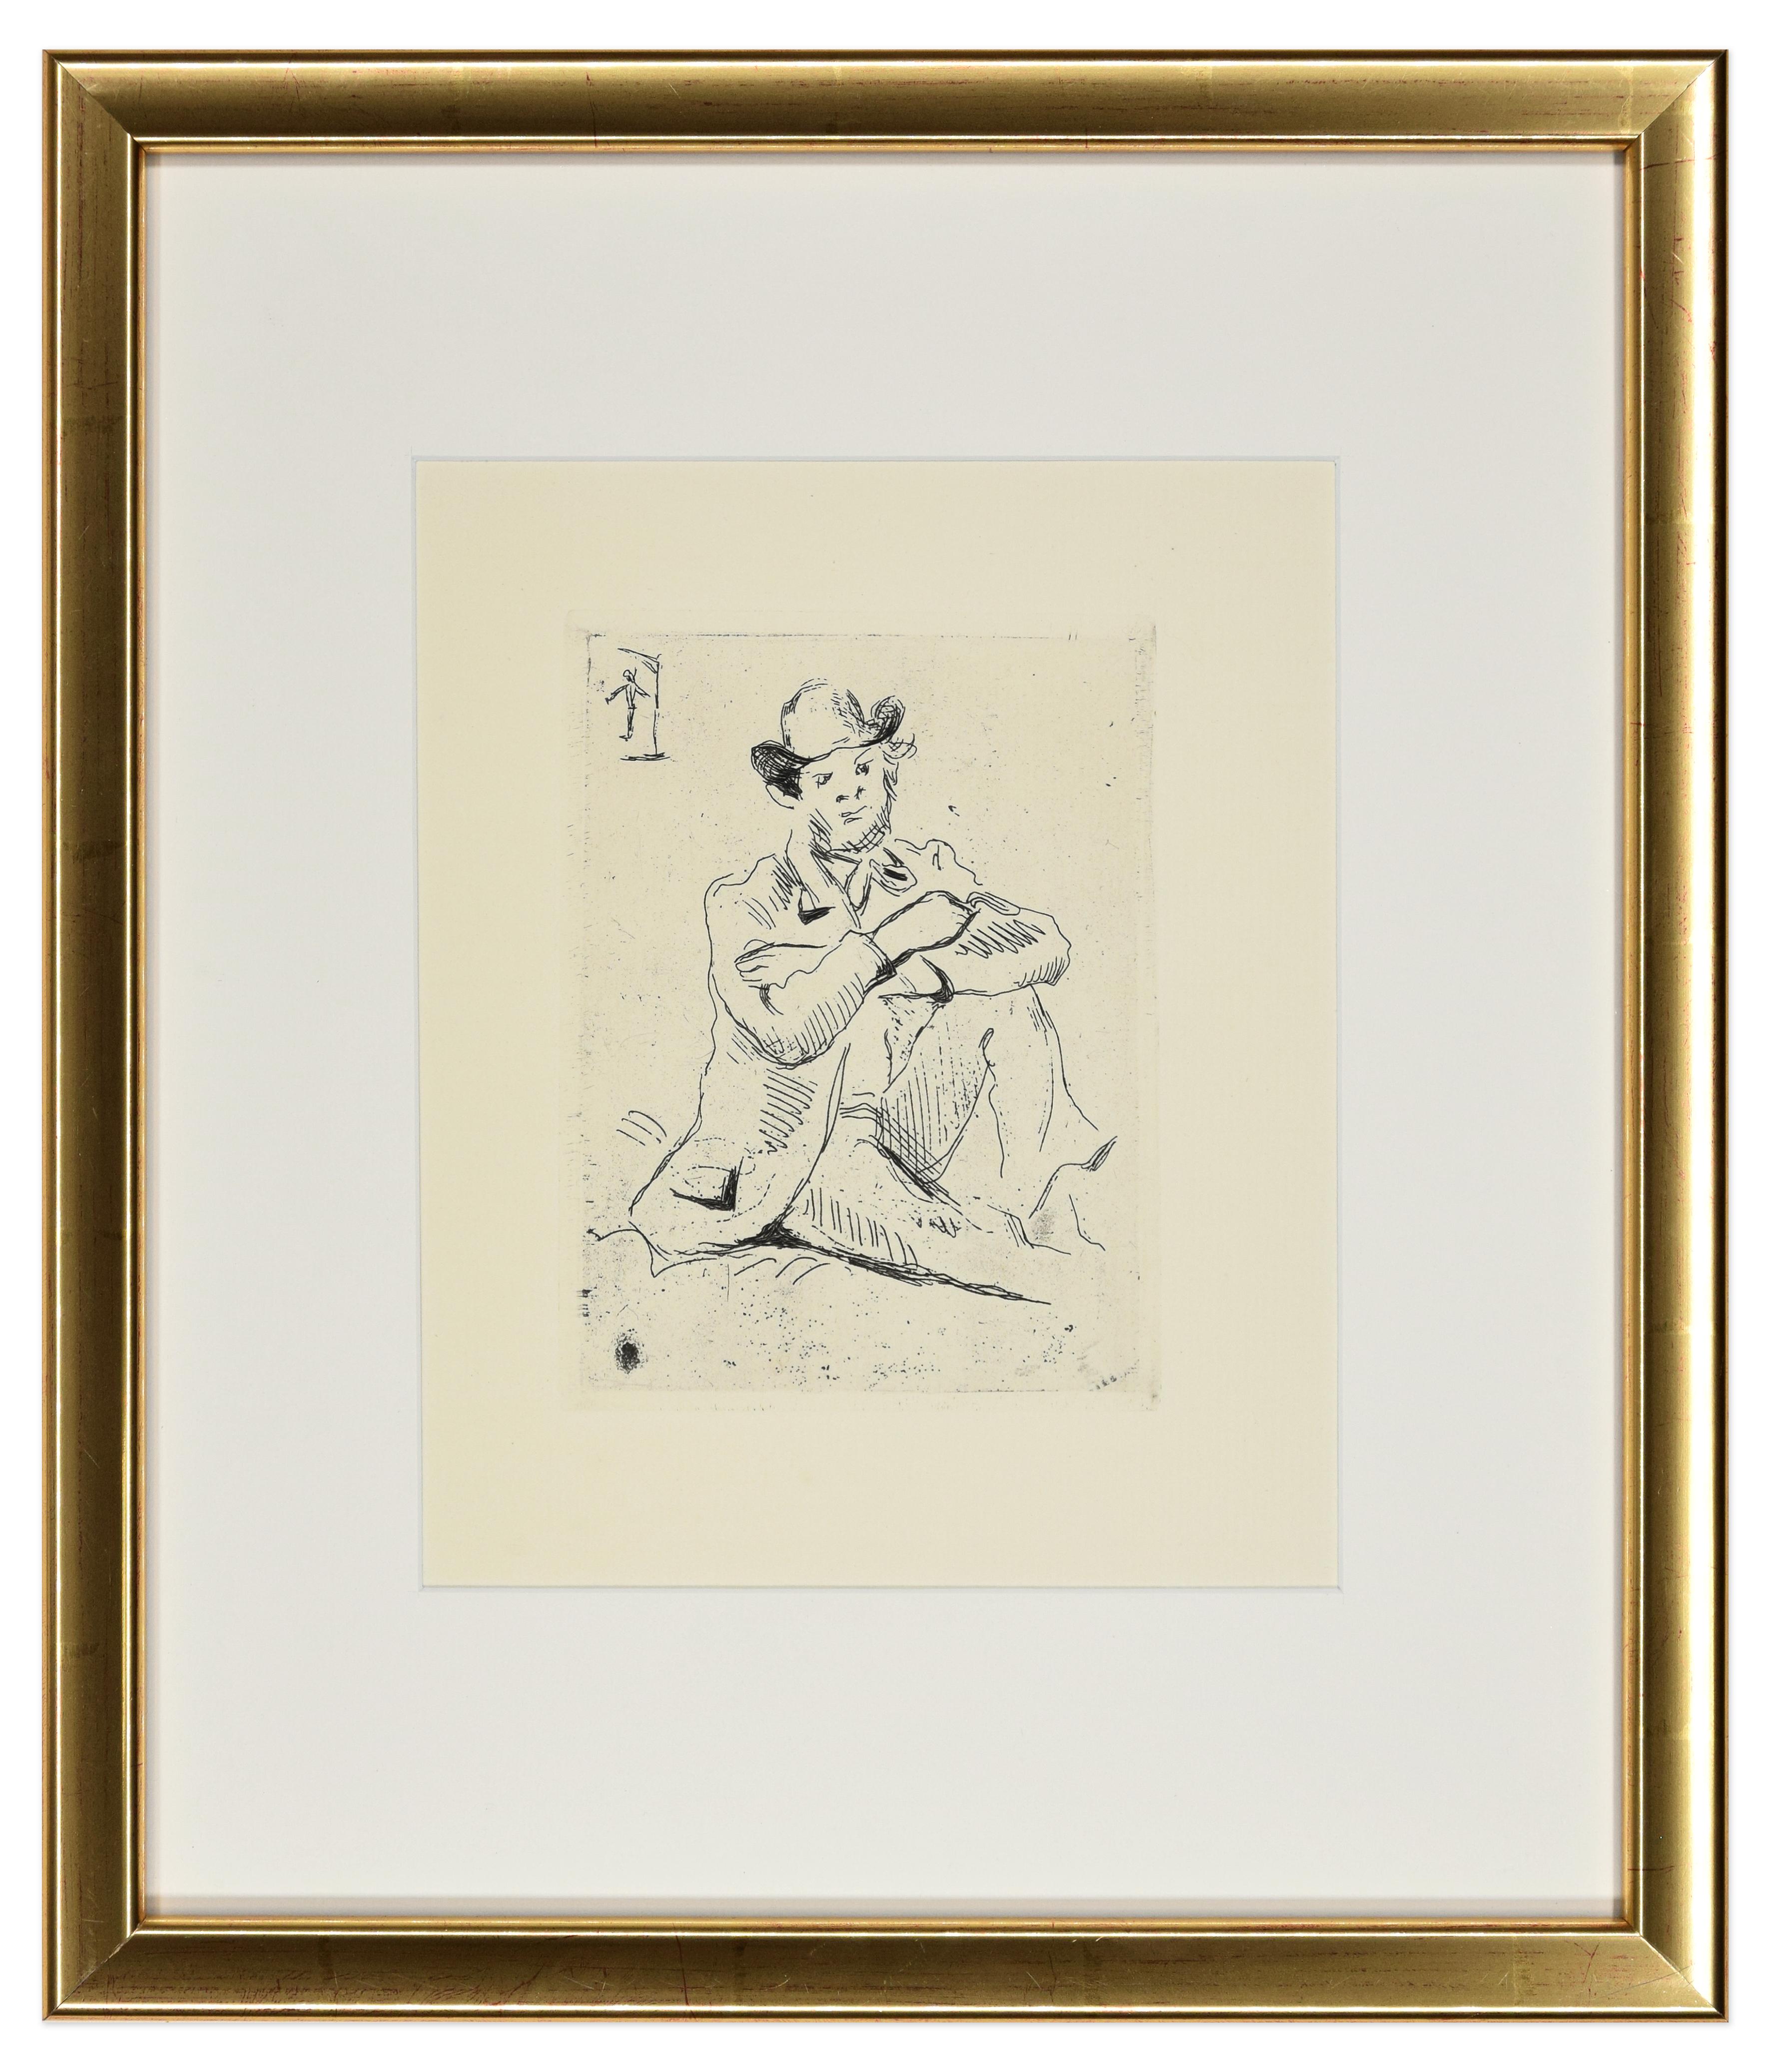 Portrait du Peintre Guillaumin - Original Etching Late 19th Century - Print by Paul Cézanne